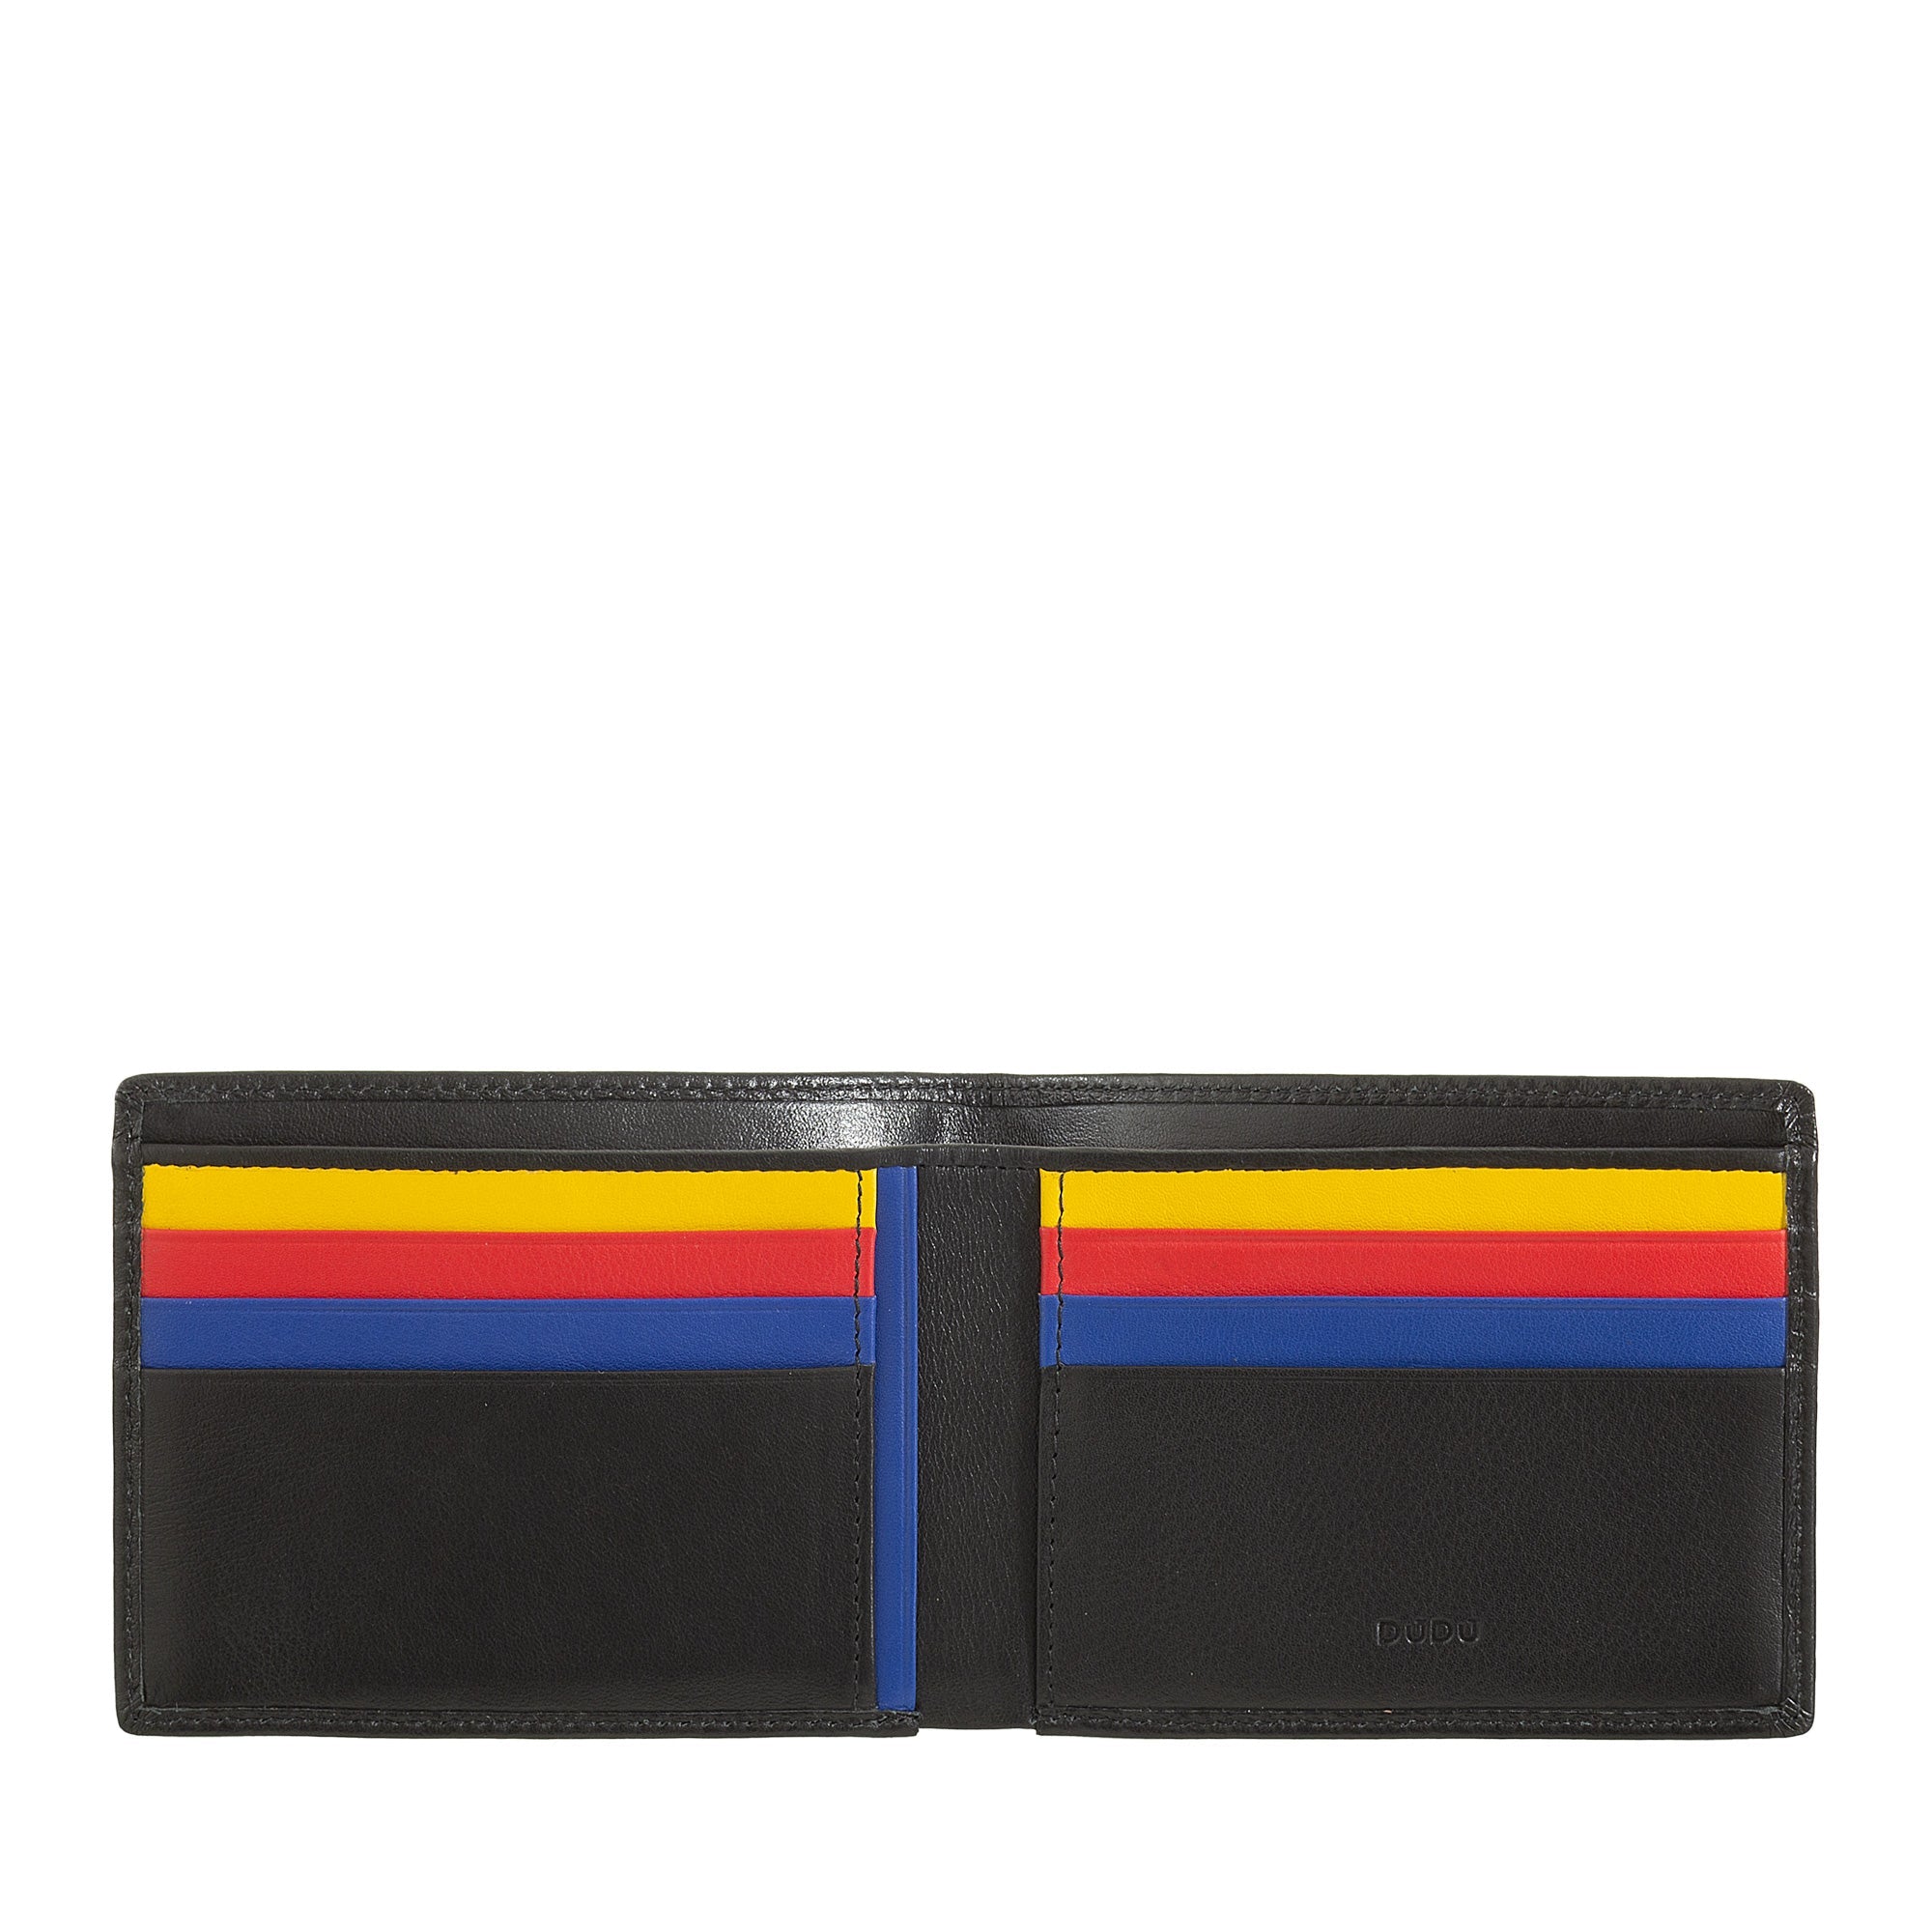 DuDu庐 Caprera Multicolor Men's Leather Wallet